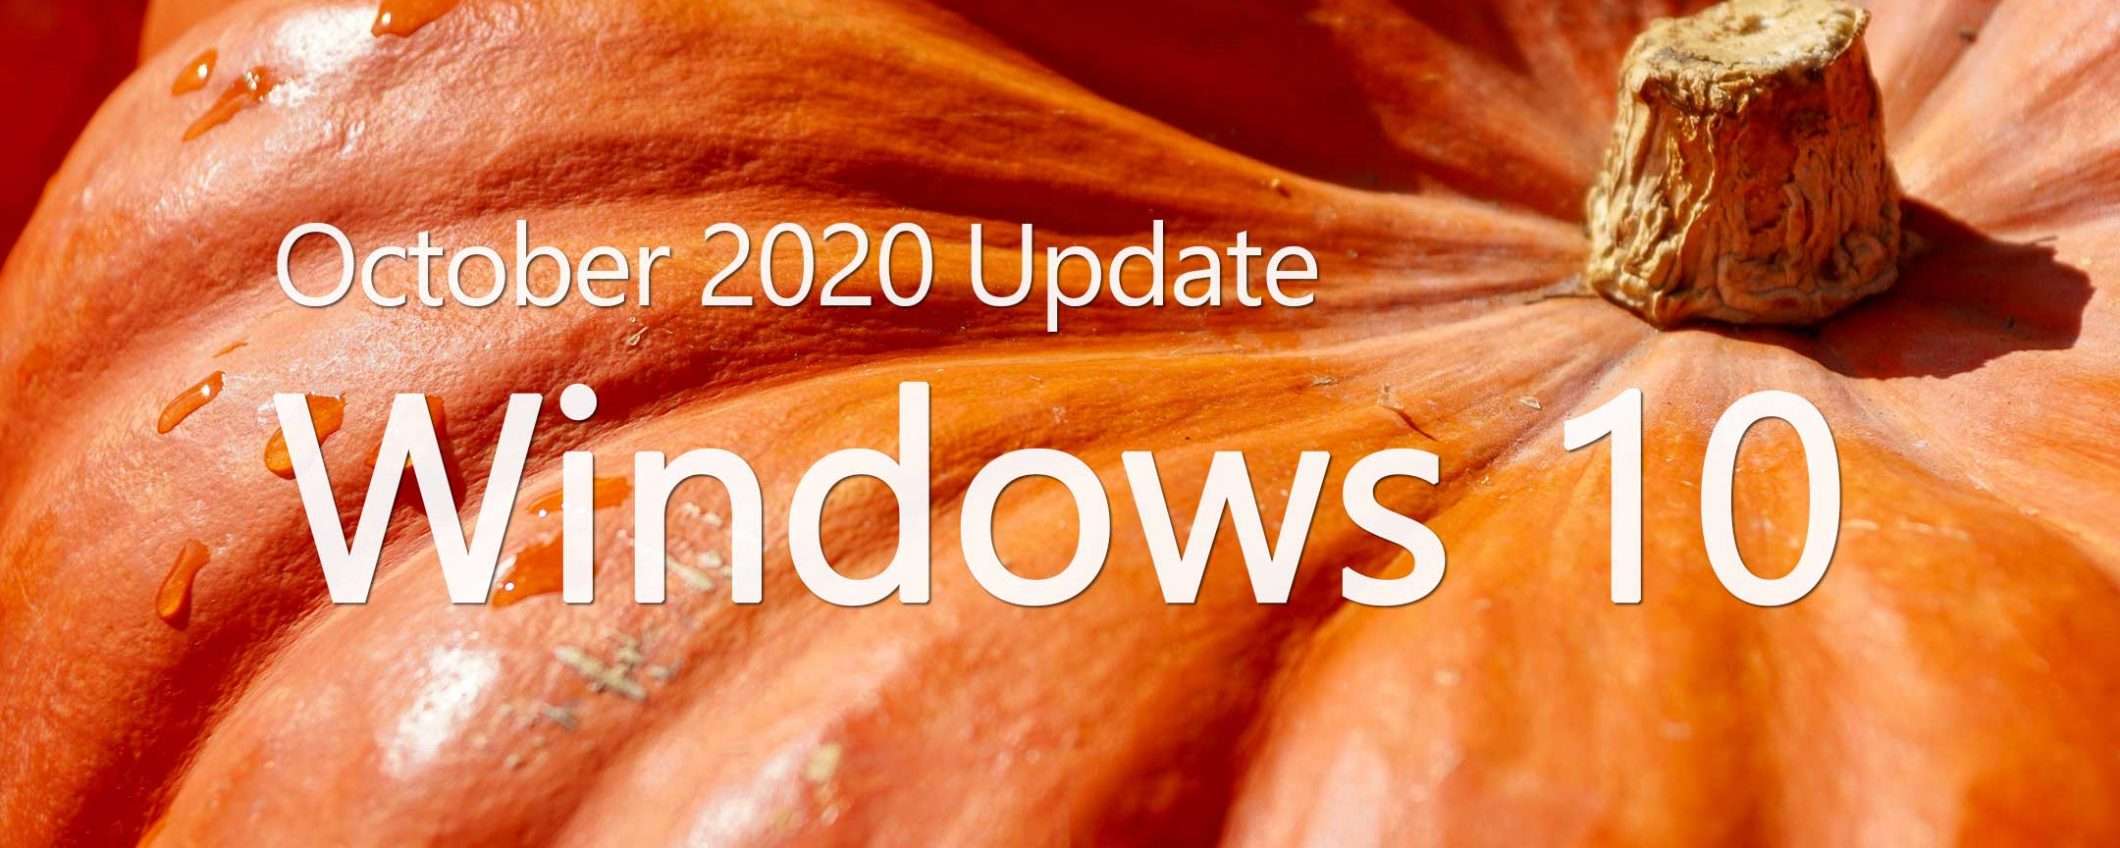 Windows 10 20H2: come liberare spazio dopo l'update